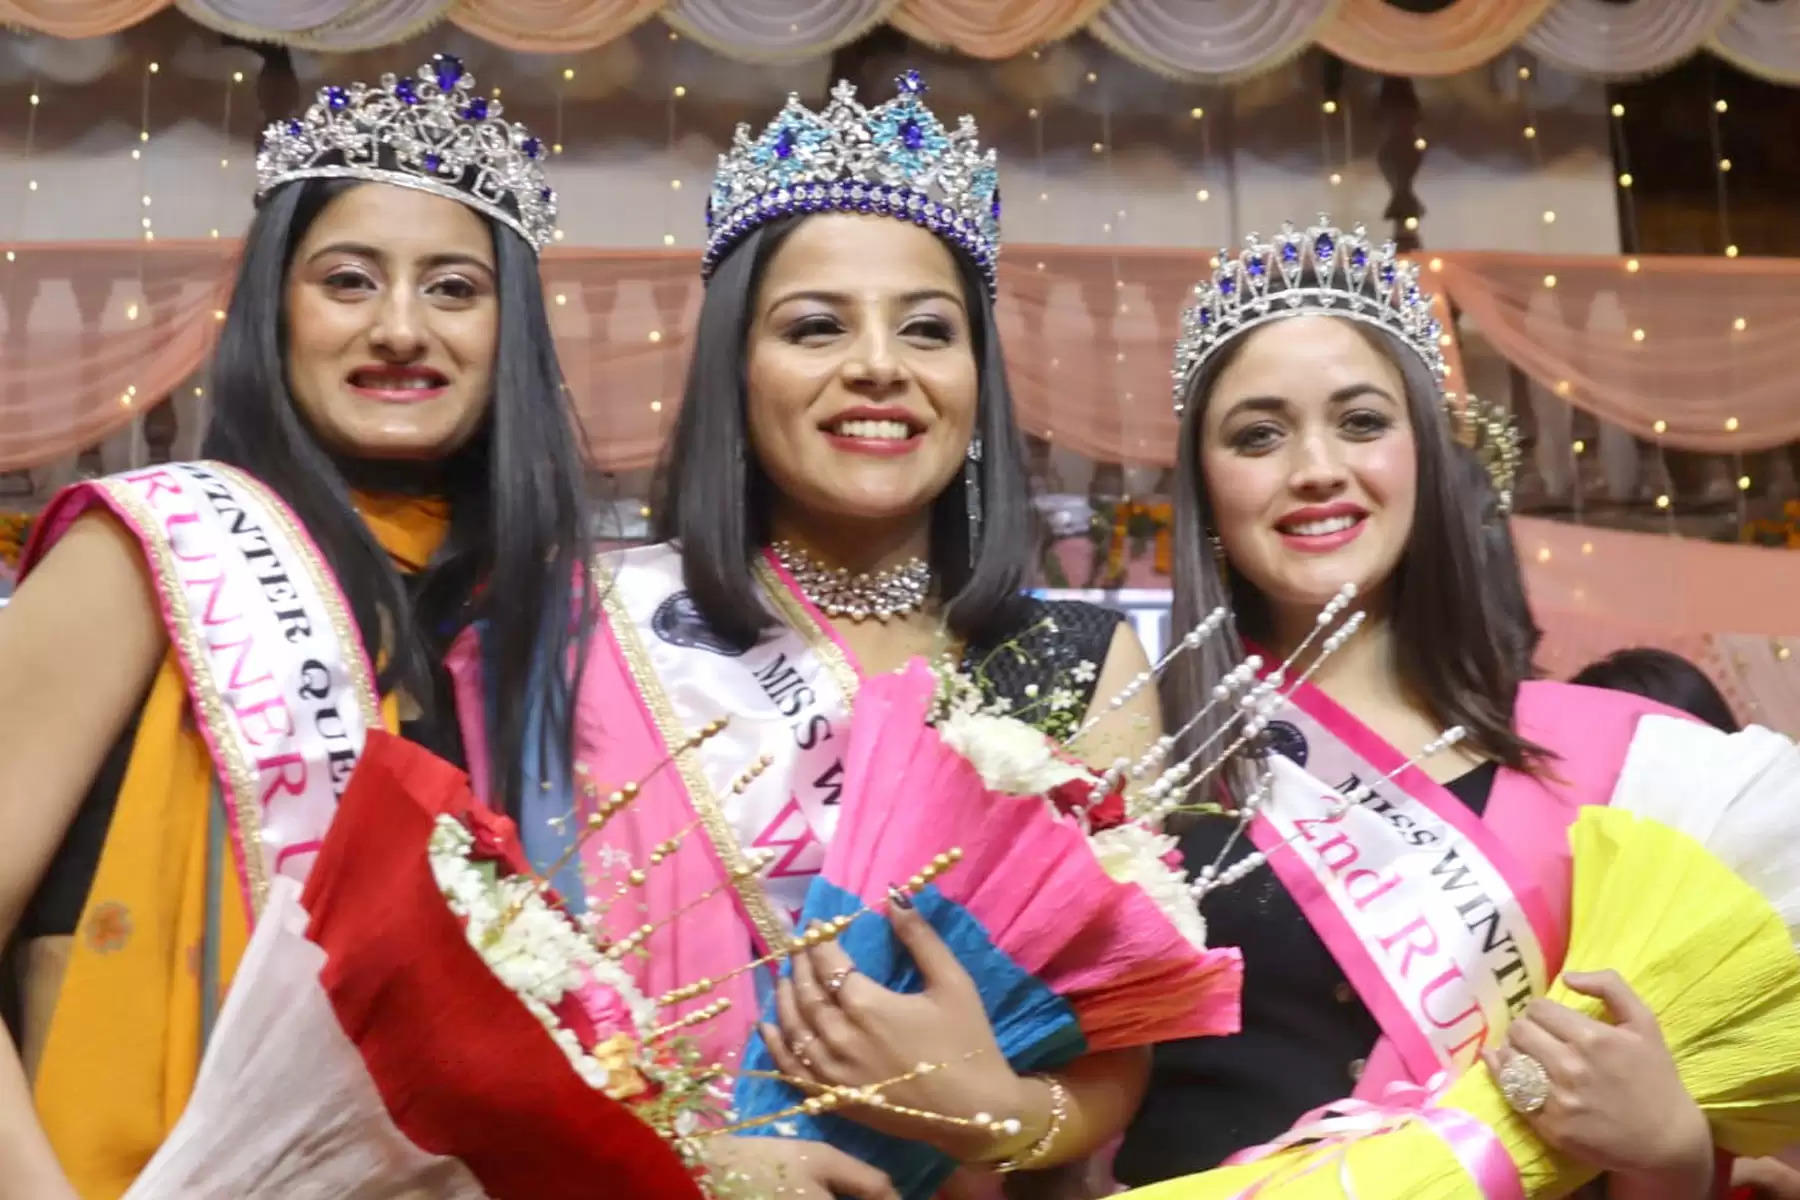 Winter Carnival Manali राष्ट्रीय शरदोत्सव मनाली-2023 के अंतिम दिन शुक्रवार रात को 12: 00 बजे मंडी की आरजू के सिर शरद सुंदरी का ताज सजा। आरजू ने 27 प्रतिभागी सुंदरियों में कांटे की टक्कर के बीच खिताब अपने नाम किया। शिमला की निकिता ठाकुर फर्स्ट रनरअप, जबकि कुल्लू के बंजार की स्मृति सेकेंड रनरअप रहीं।      वायस ऑफ कार्निवाल के तीनों पुरस्कार इस वर्ष कुल्लू जिला के नाम रहे। सैंज से दुष्यंत ठाकुर ने कड़े मुकाबले के बीच वायस ऑफ विंटर कार्निवाल मनाली 2023 का खिताब अपने नाम कर लिया। कुल्लू की ही अर्पिता ठाकुर दूसरे स्थान पर, जबकि कुल्लू के ही शैलेश बौद्ध तीसरे स्थान पर रहे।